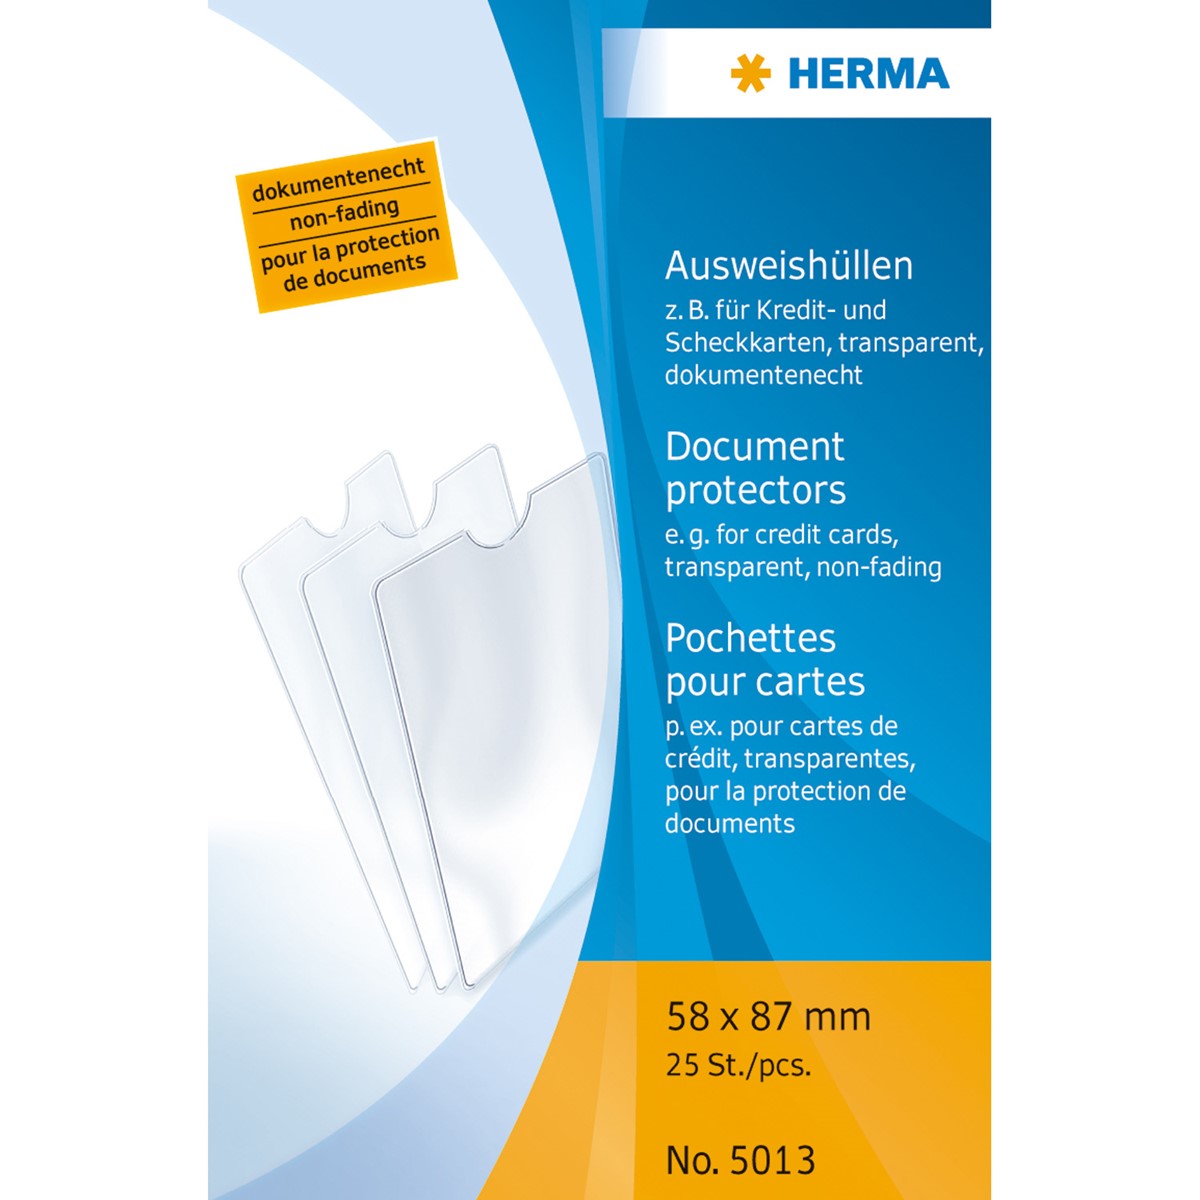 Herma - Ausweishülle 58 x 87 mm, für Kreditkarte, Scheckkarte, einfach